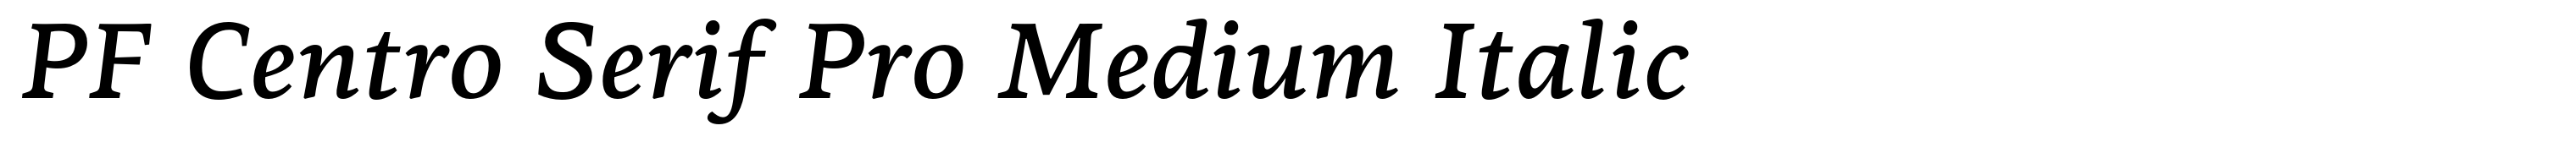 PF Centro Serif Pro Medium Italic